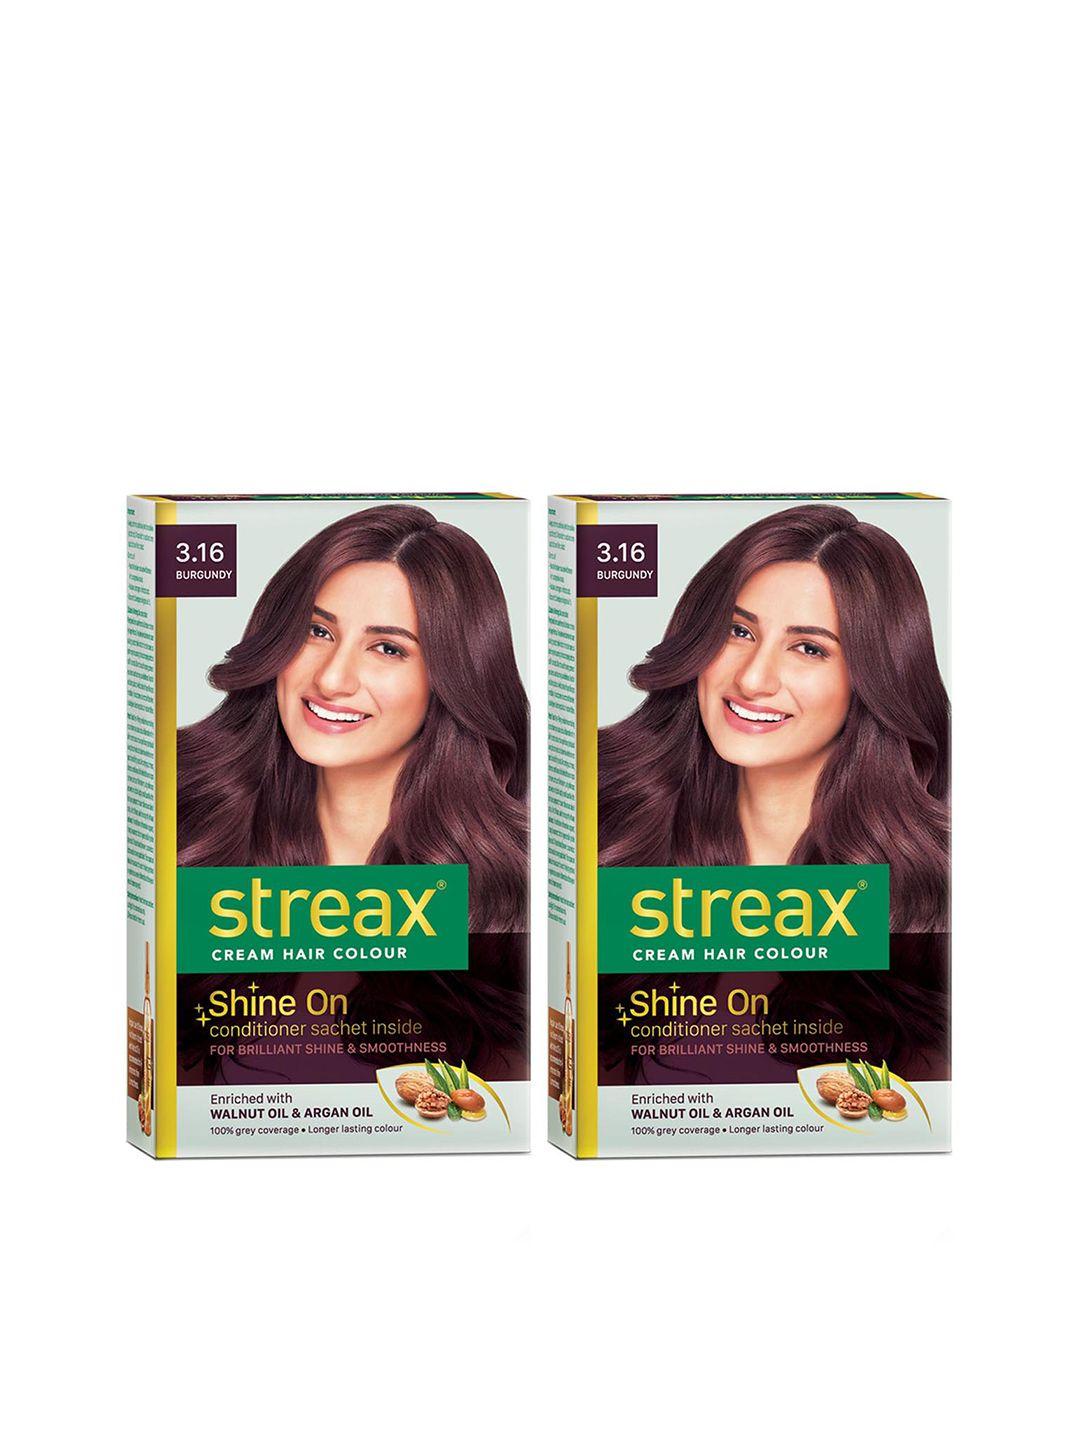 streax set of 2 cream hair colour - 3.16 burgundy 120ml each